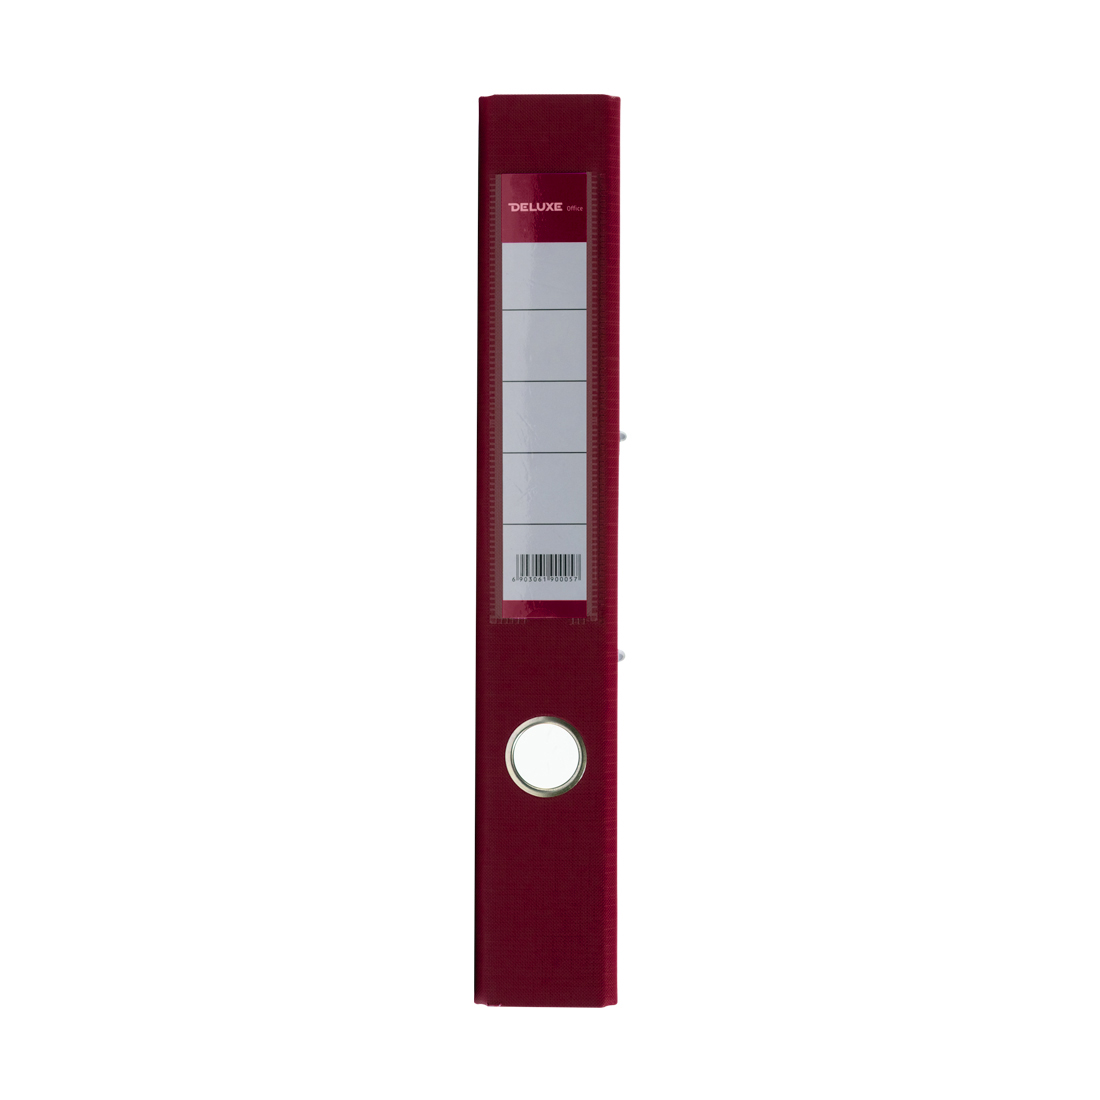 Папка-регистратор Deluxe с арочным механизмом, Office 2-WN8, А4, 50 мм, бордовый